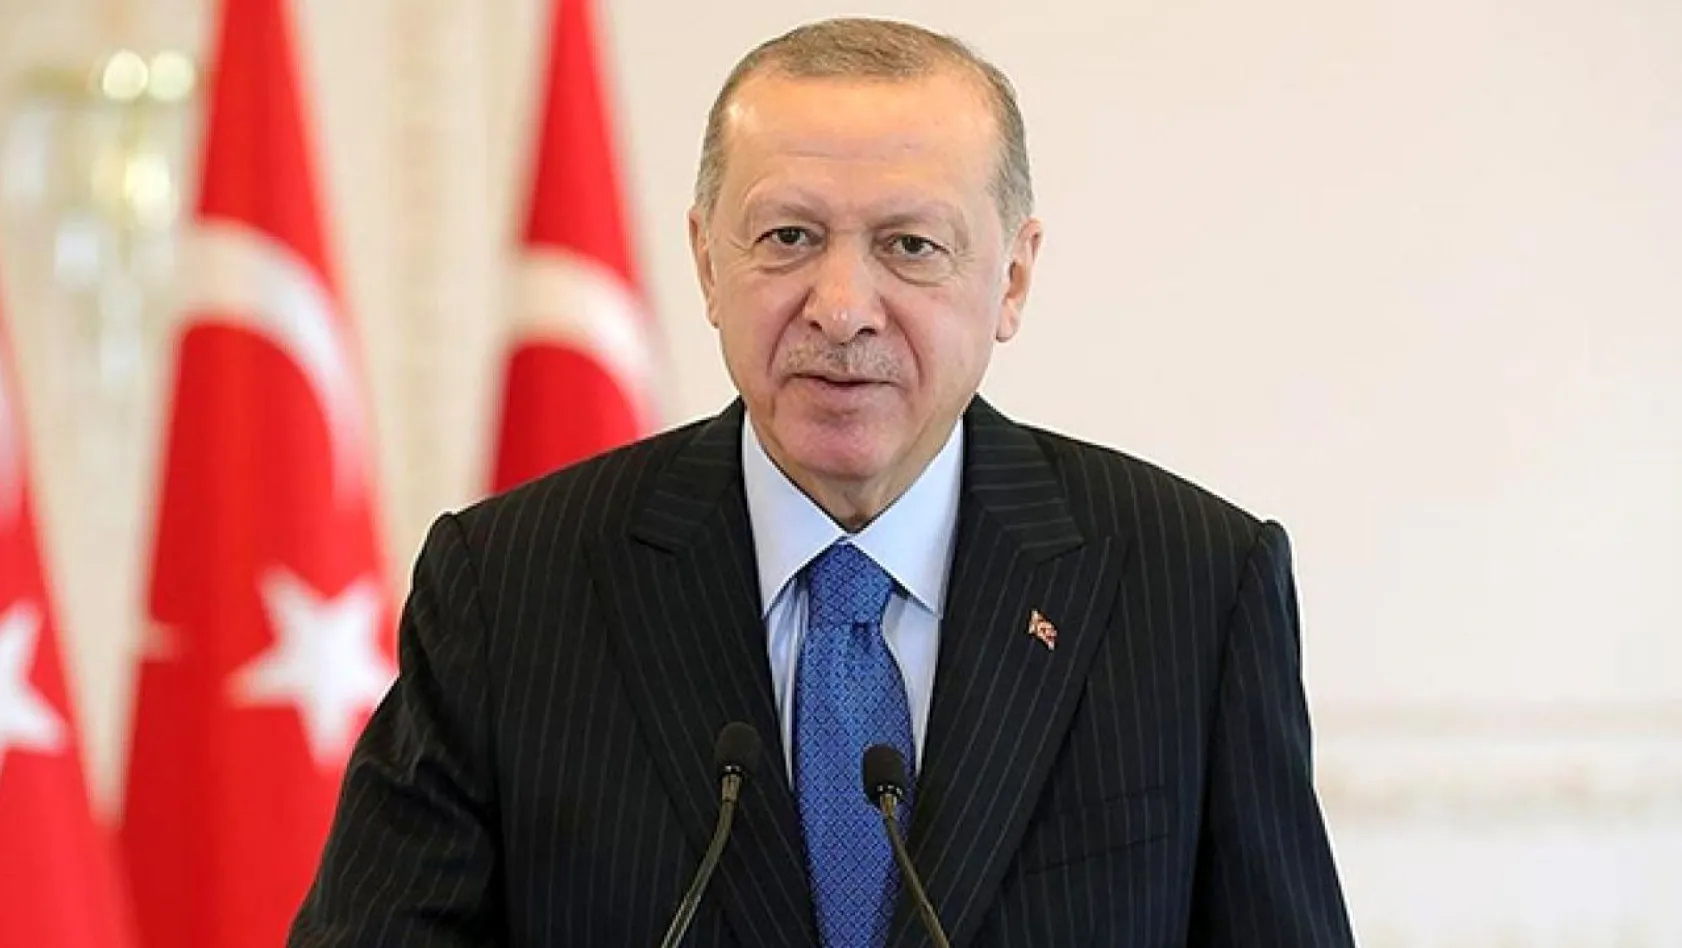 Cumhurbaşkanı Erdoğan'dan öğrencilere müjde